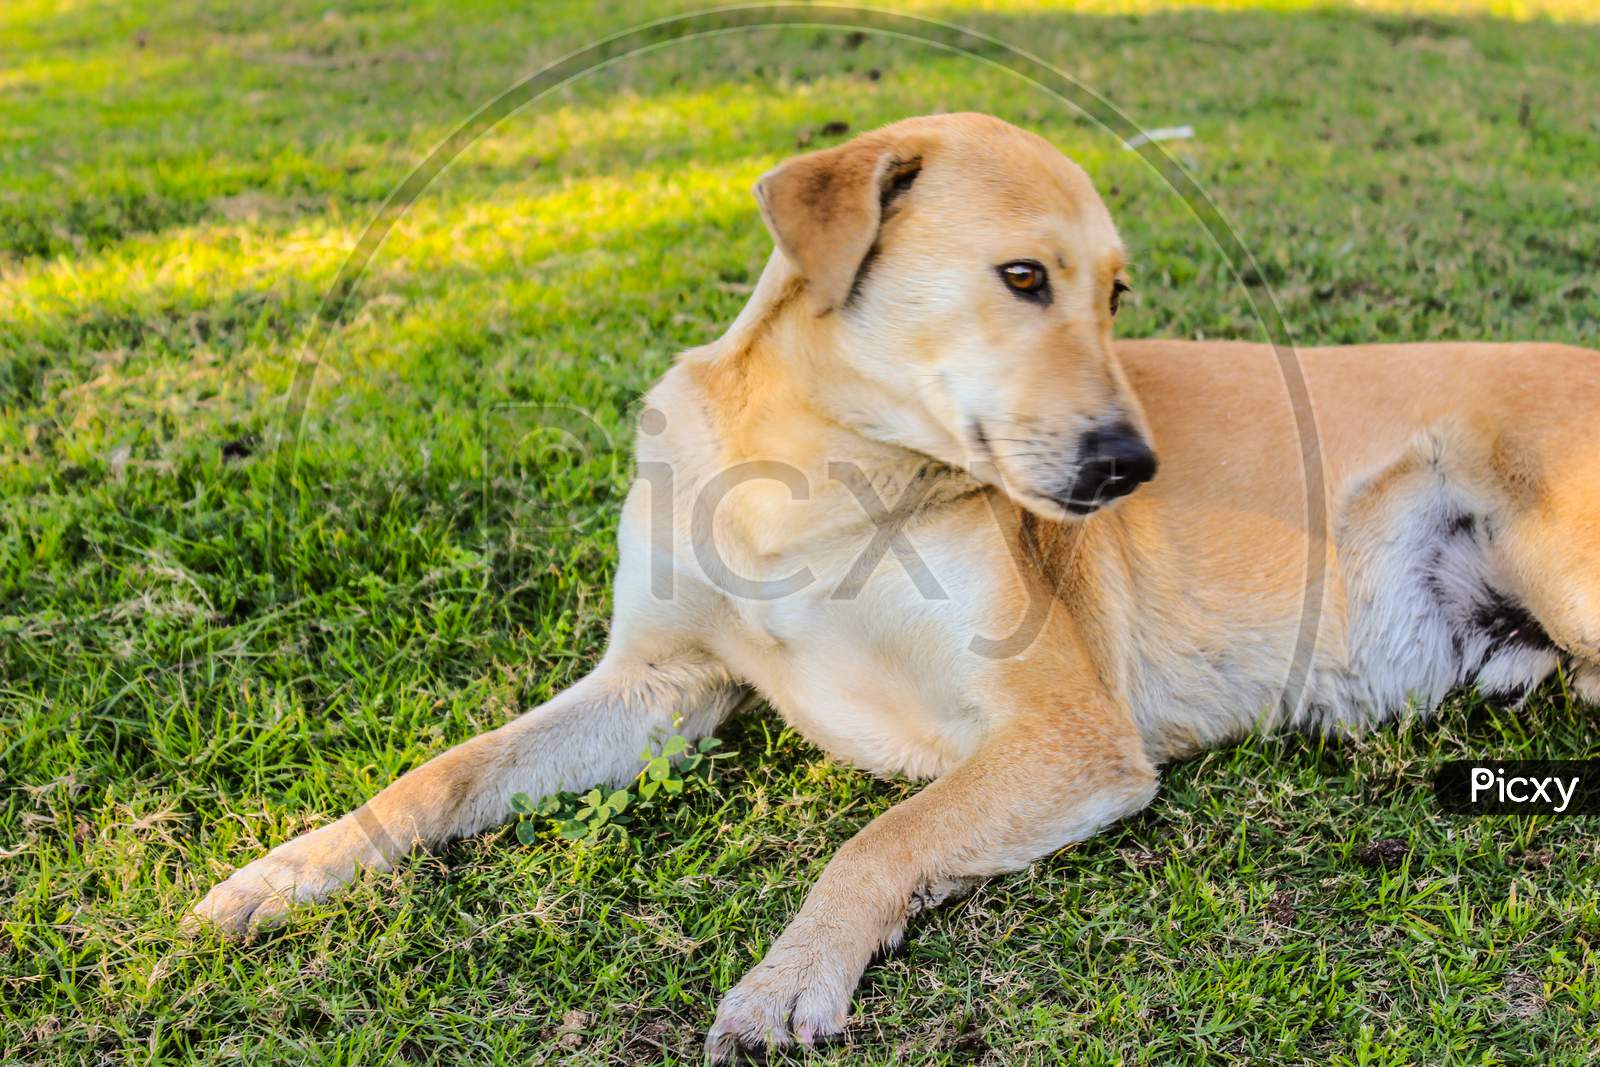 Labrador Retriever Dog In an Lawn Garden